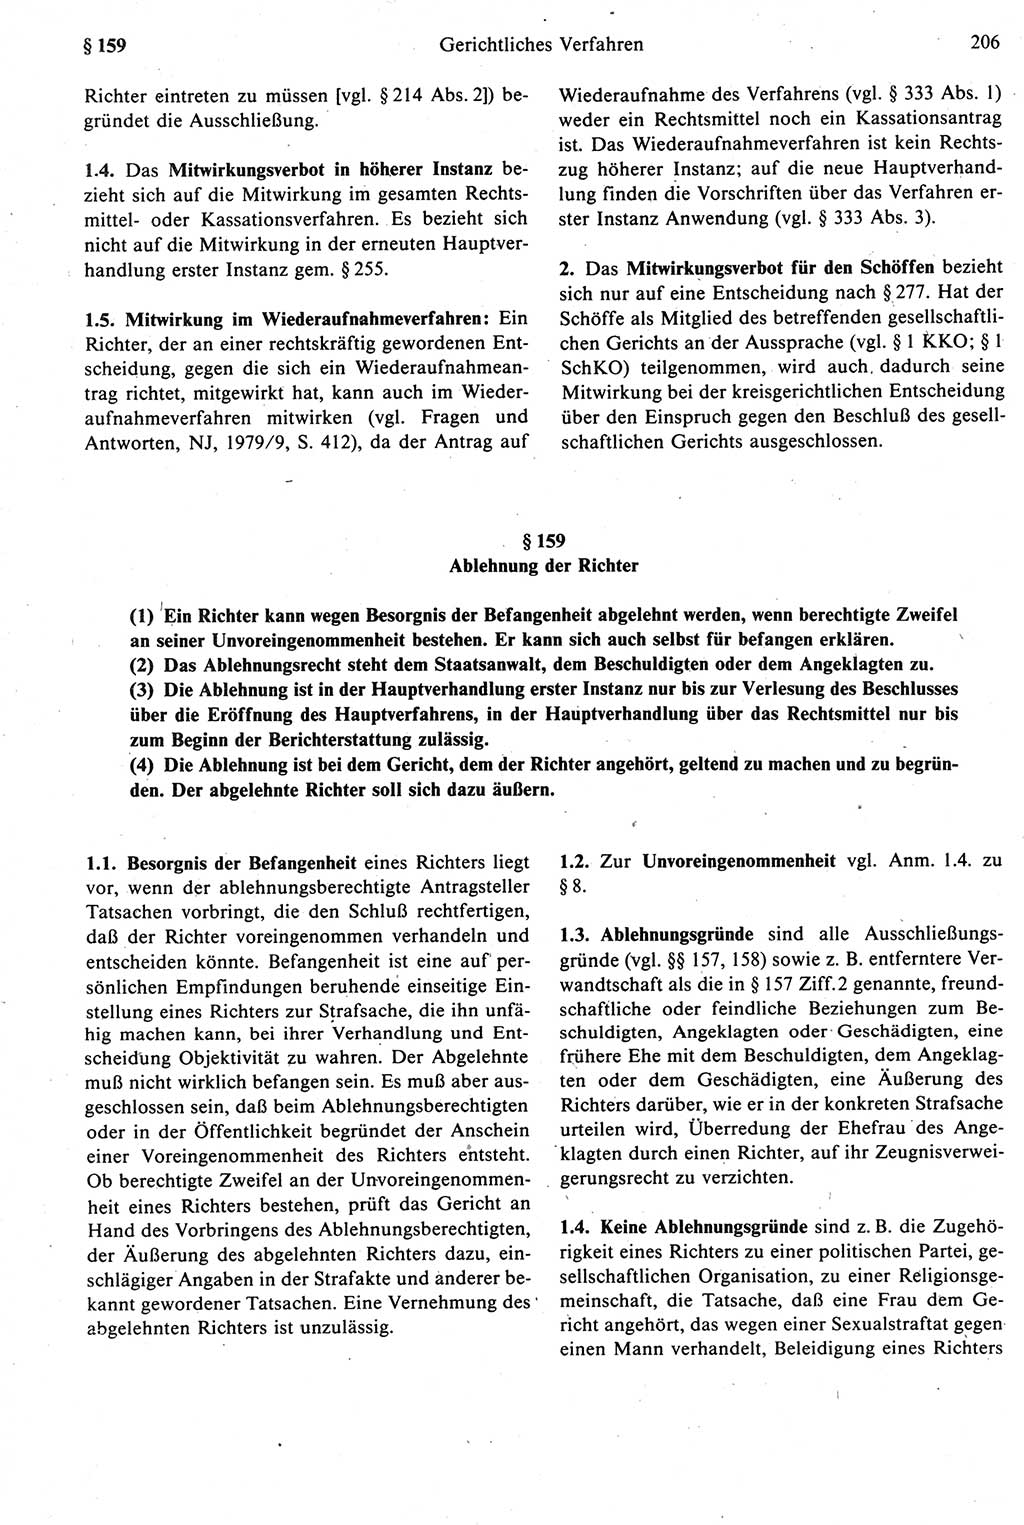 Strafprozeßrecht der DDR [Deutsche Demokratische Republik], Kommentar zur Strafprozeßordnung (StPO) 1987, Seite 206 (Strafprozeßr. DDR Komm. StPO 1987, S. 206)